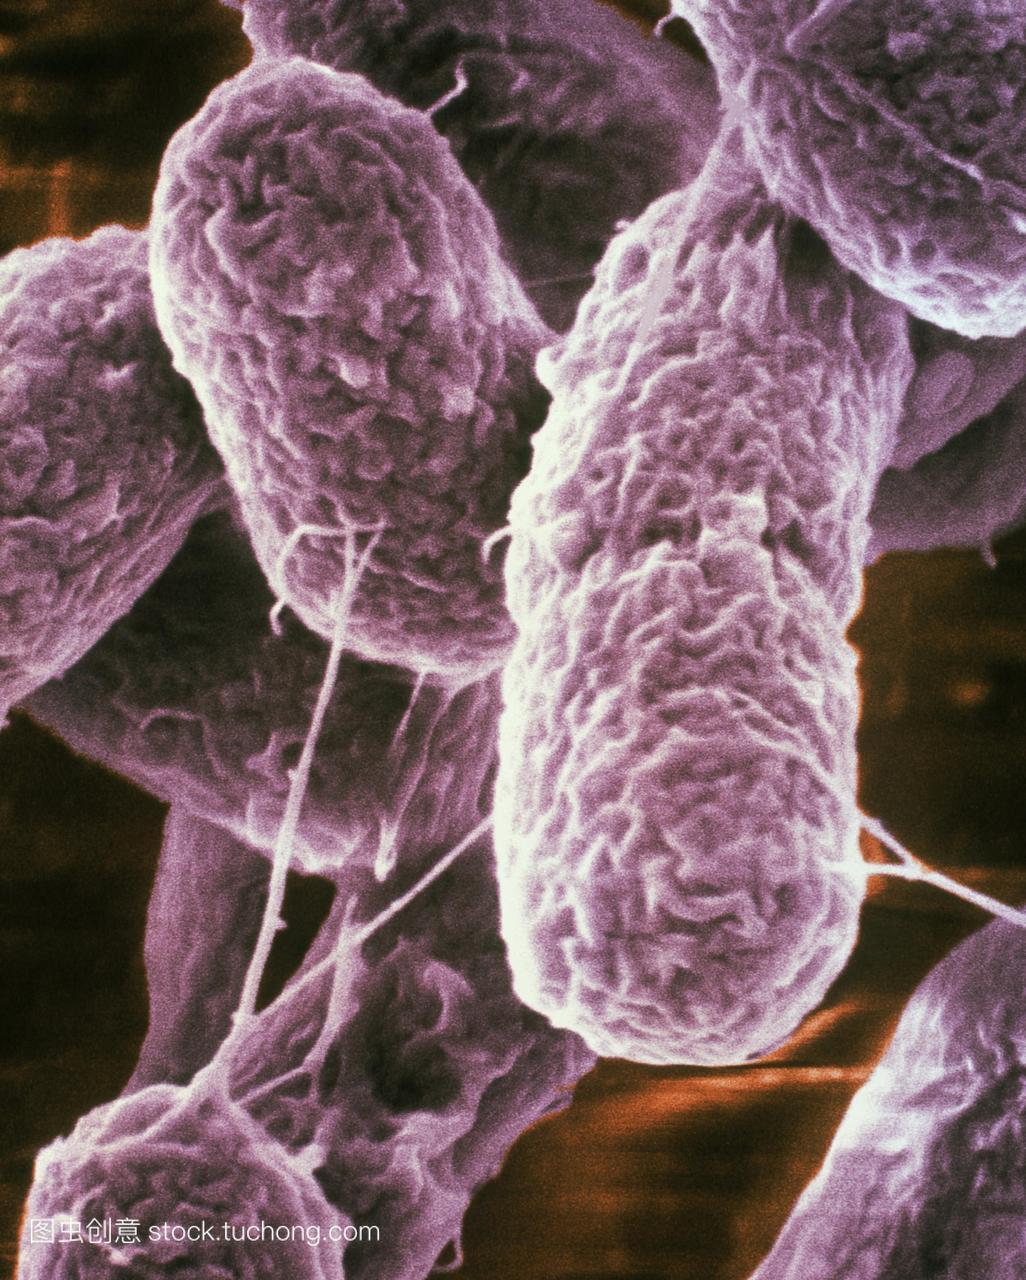 SEM的大肠杆菌H15707细菌,食物中毒的原因。